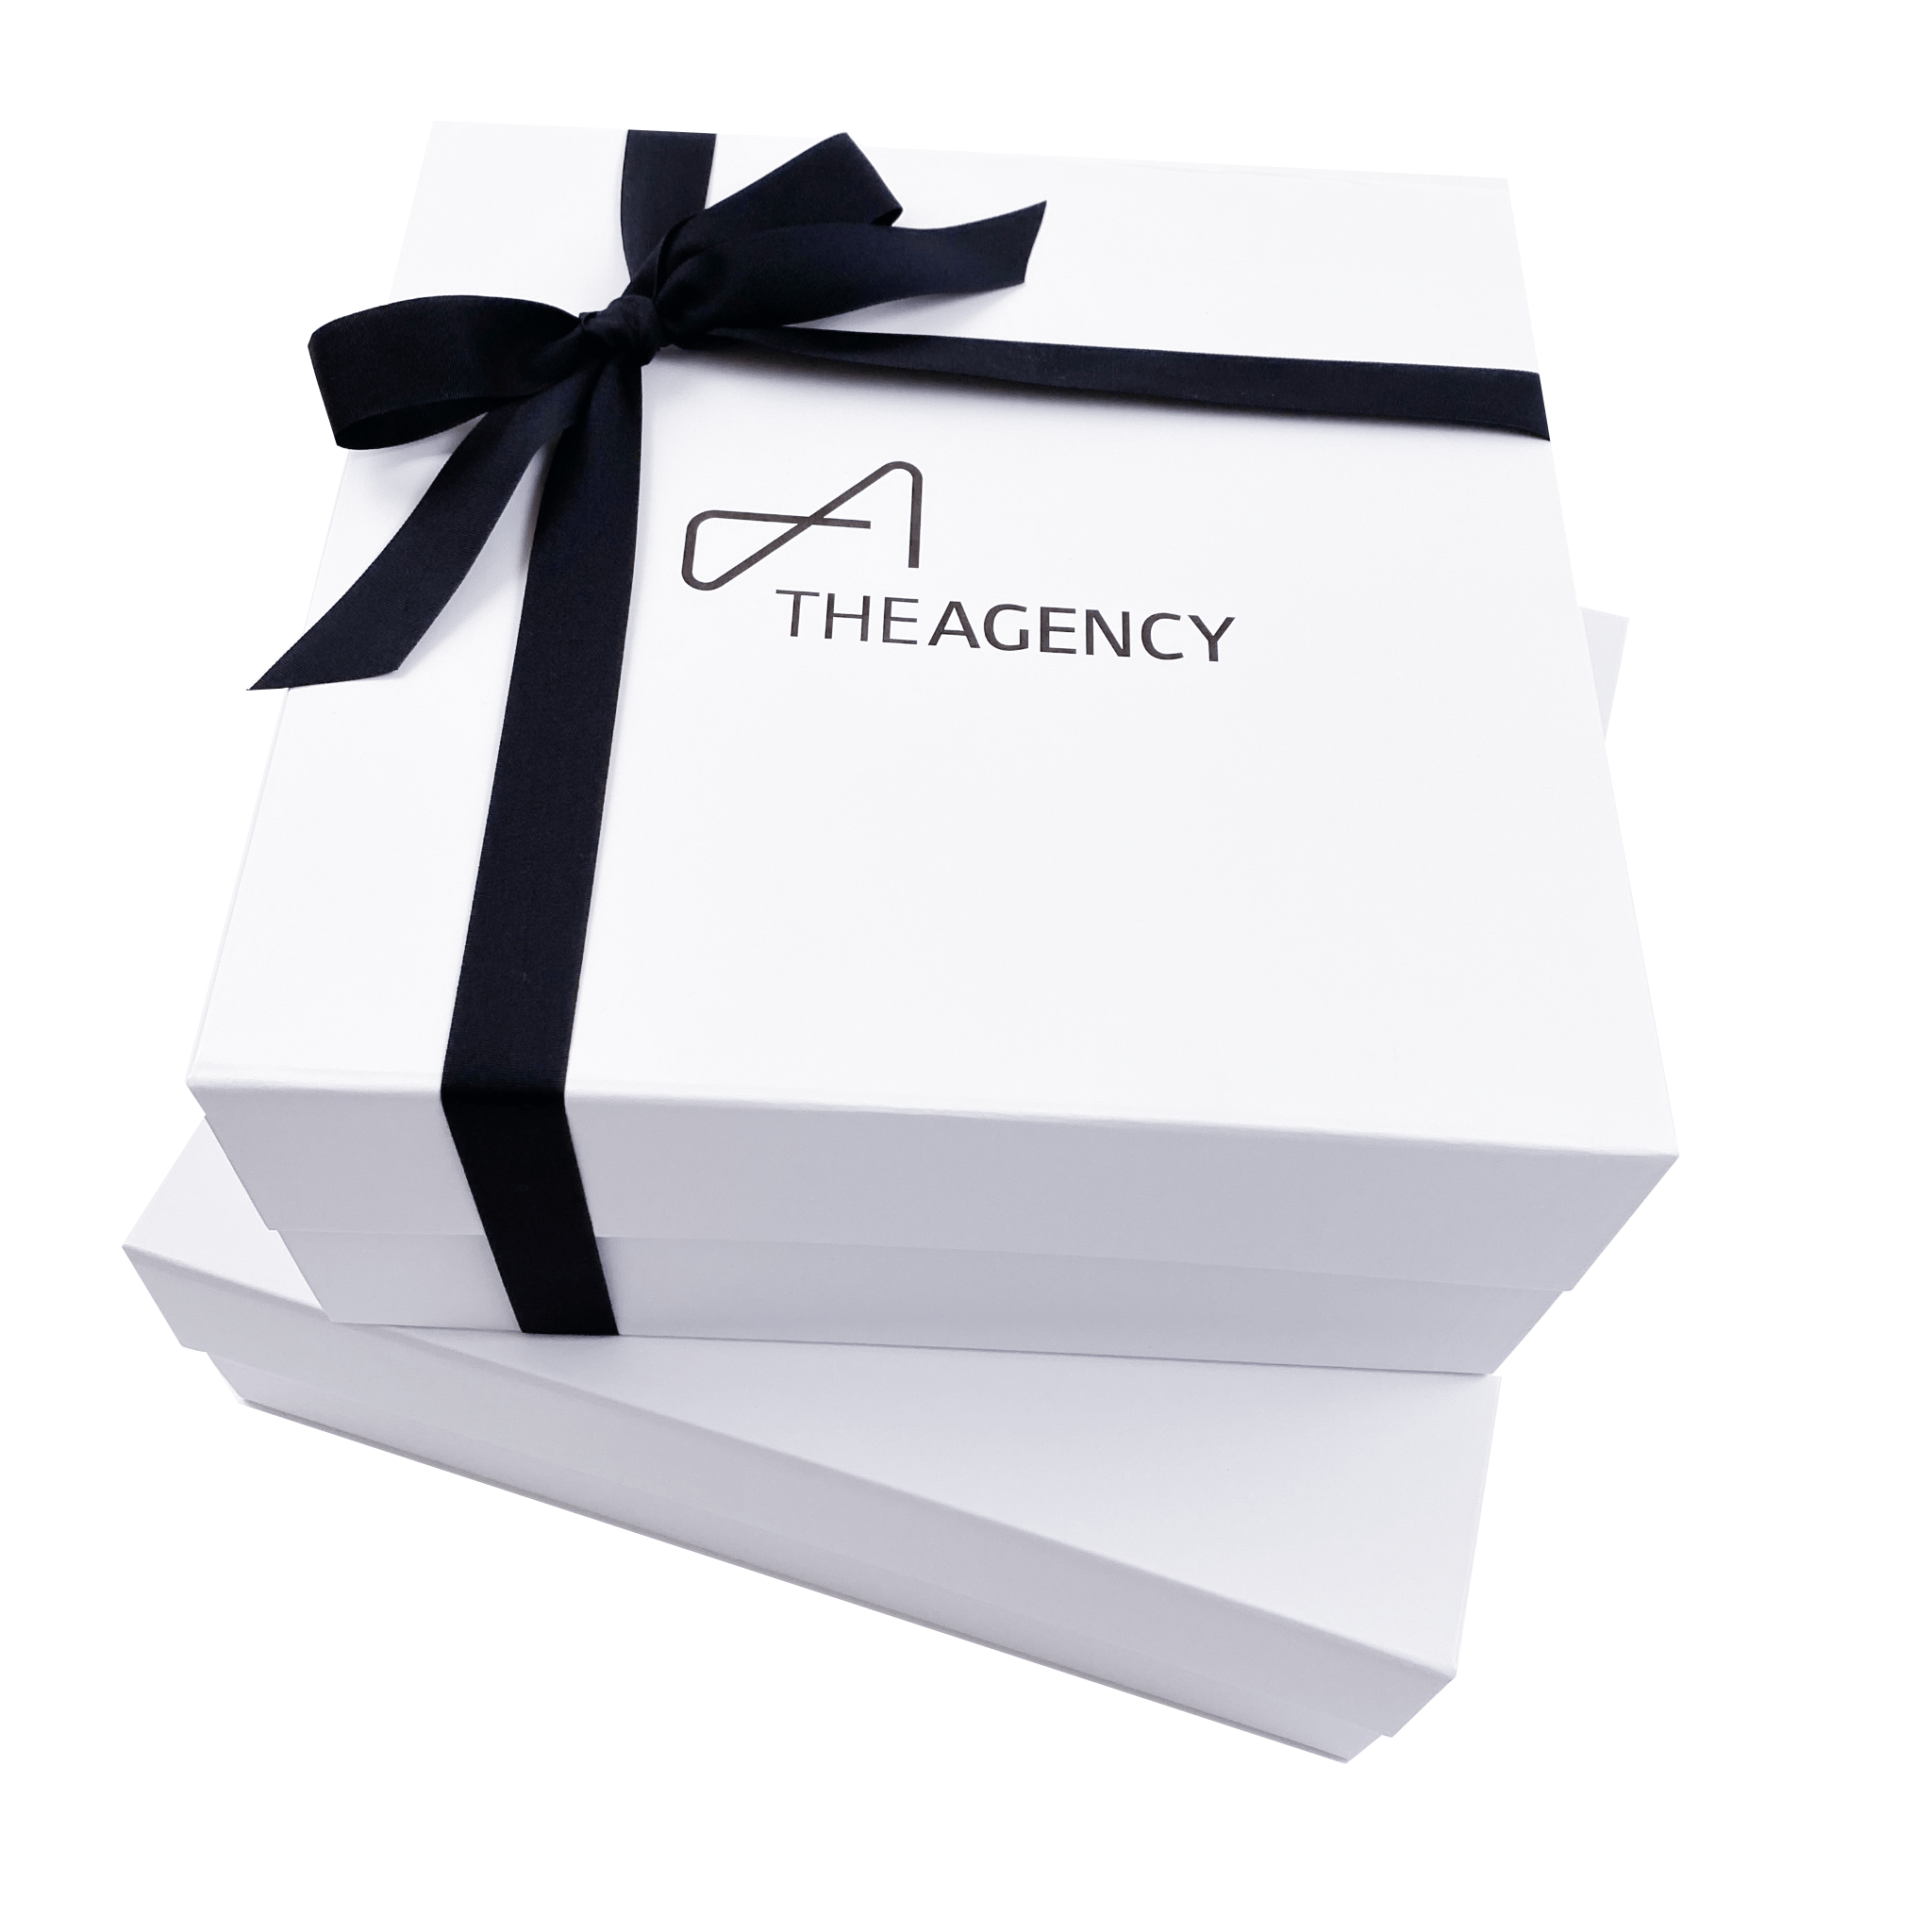 DIY Gift Box - Handmade Gift Box - Free Gift Box Template - Paper Crafts |  Handmade paper gifts, Gift box template, Diy gift box template